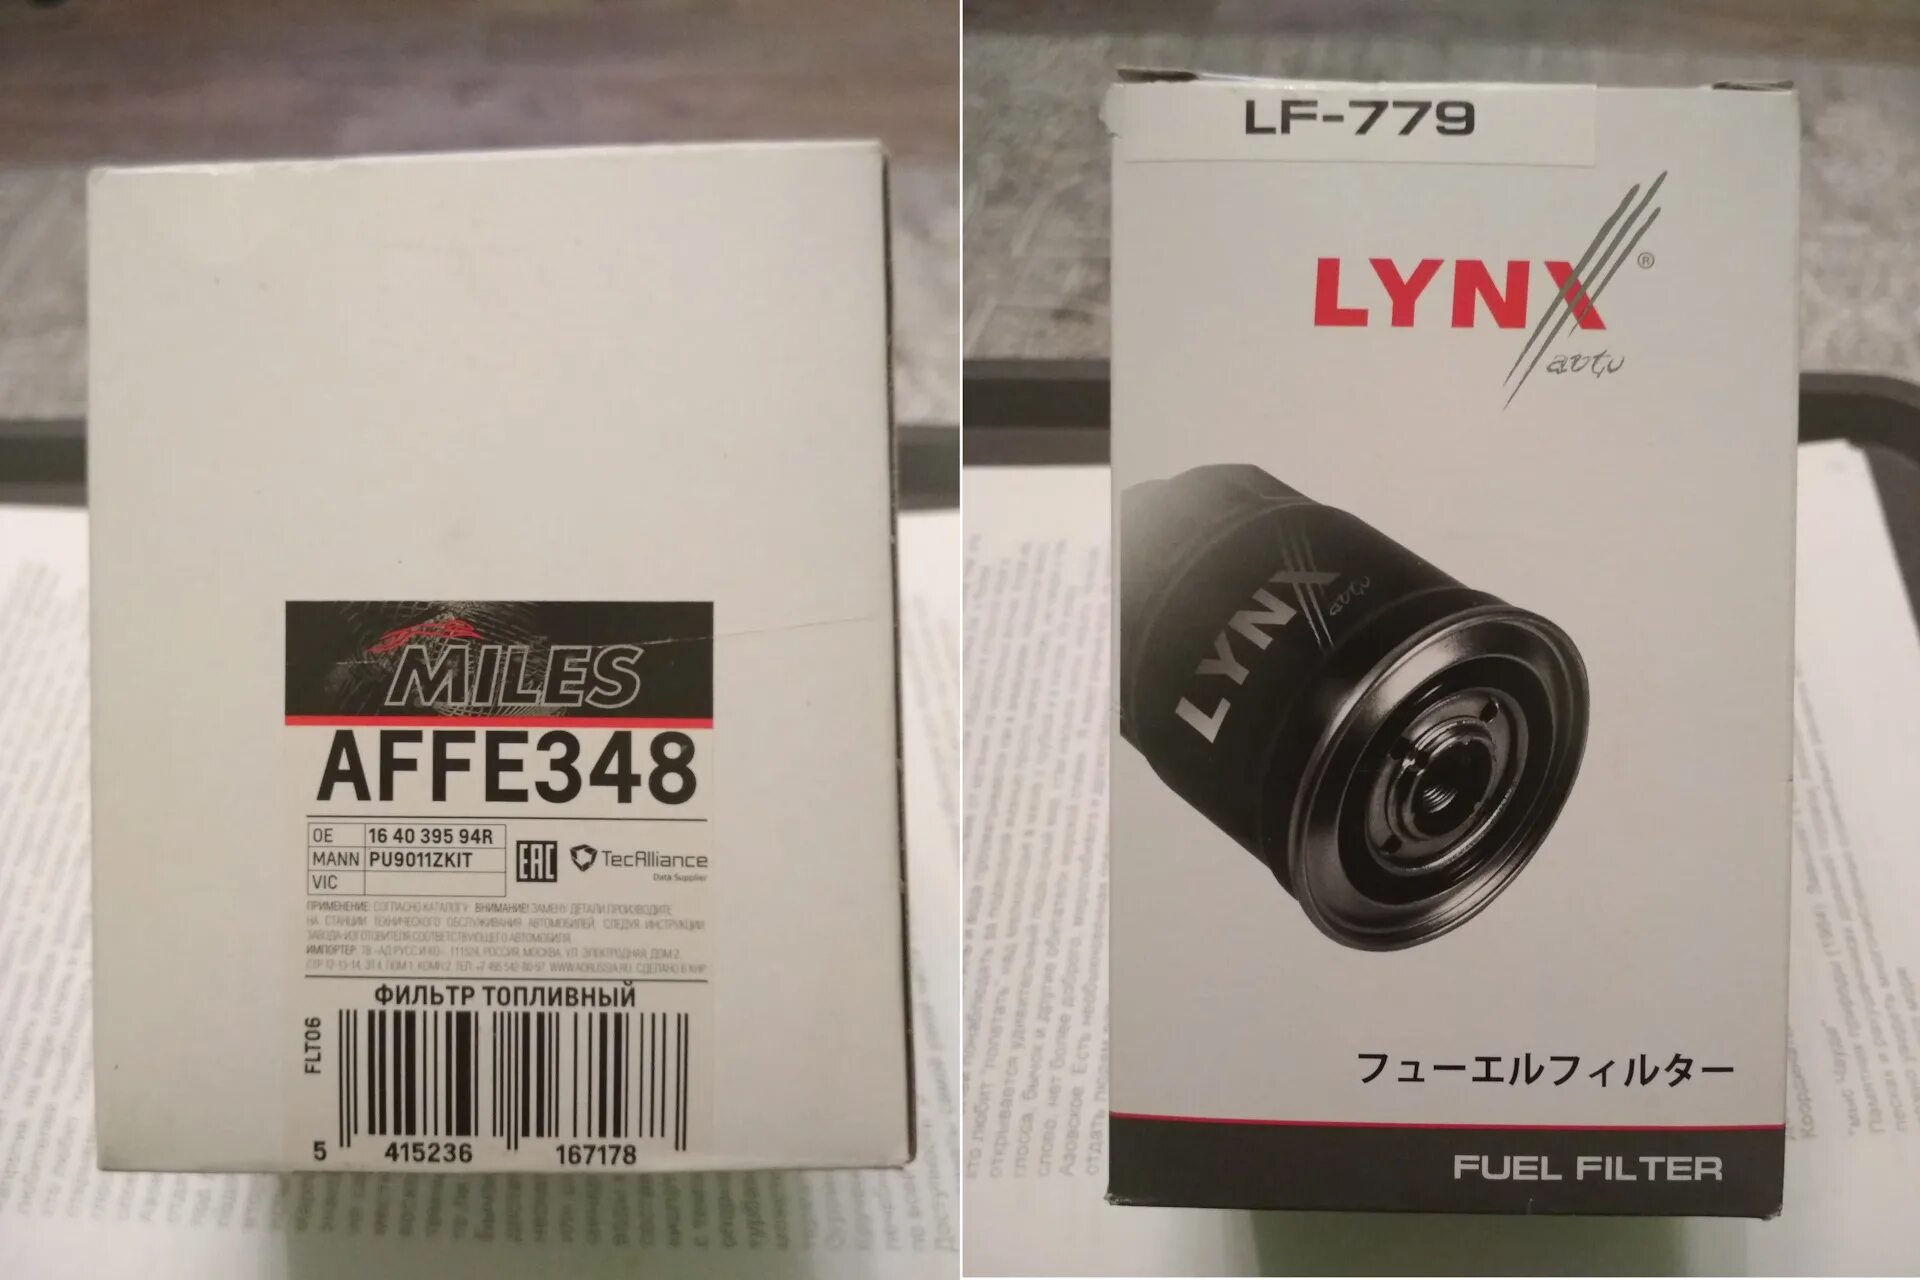 Фильтр топливный Lynx lf779. LYNXAUTO LF-779 фильтр топливный. LYNXAUTO LF-779. Фильтр топливный LYNXAUTO LF-779 - LYNXAUTO арт. LF-779. Производитель lynx отзывы